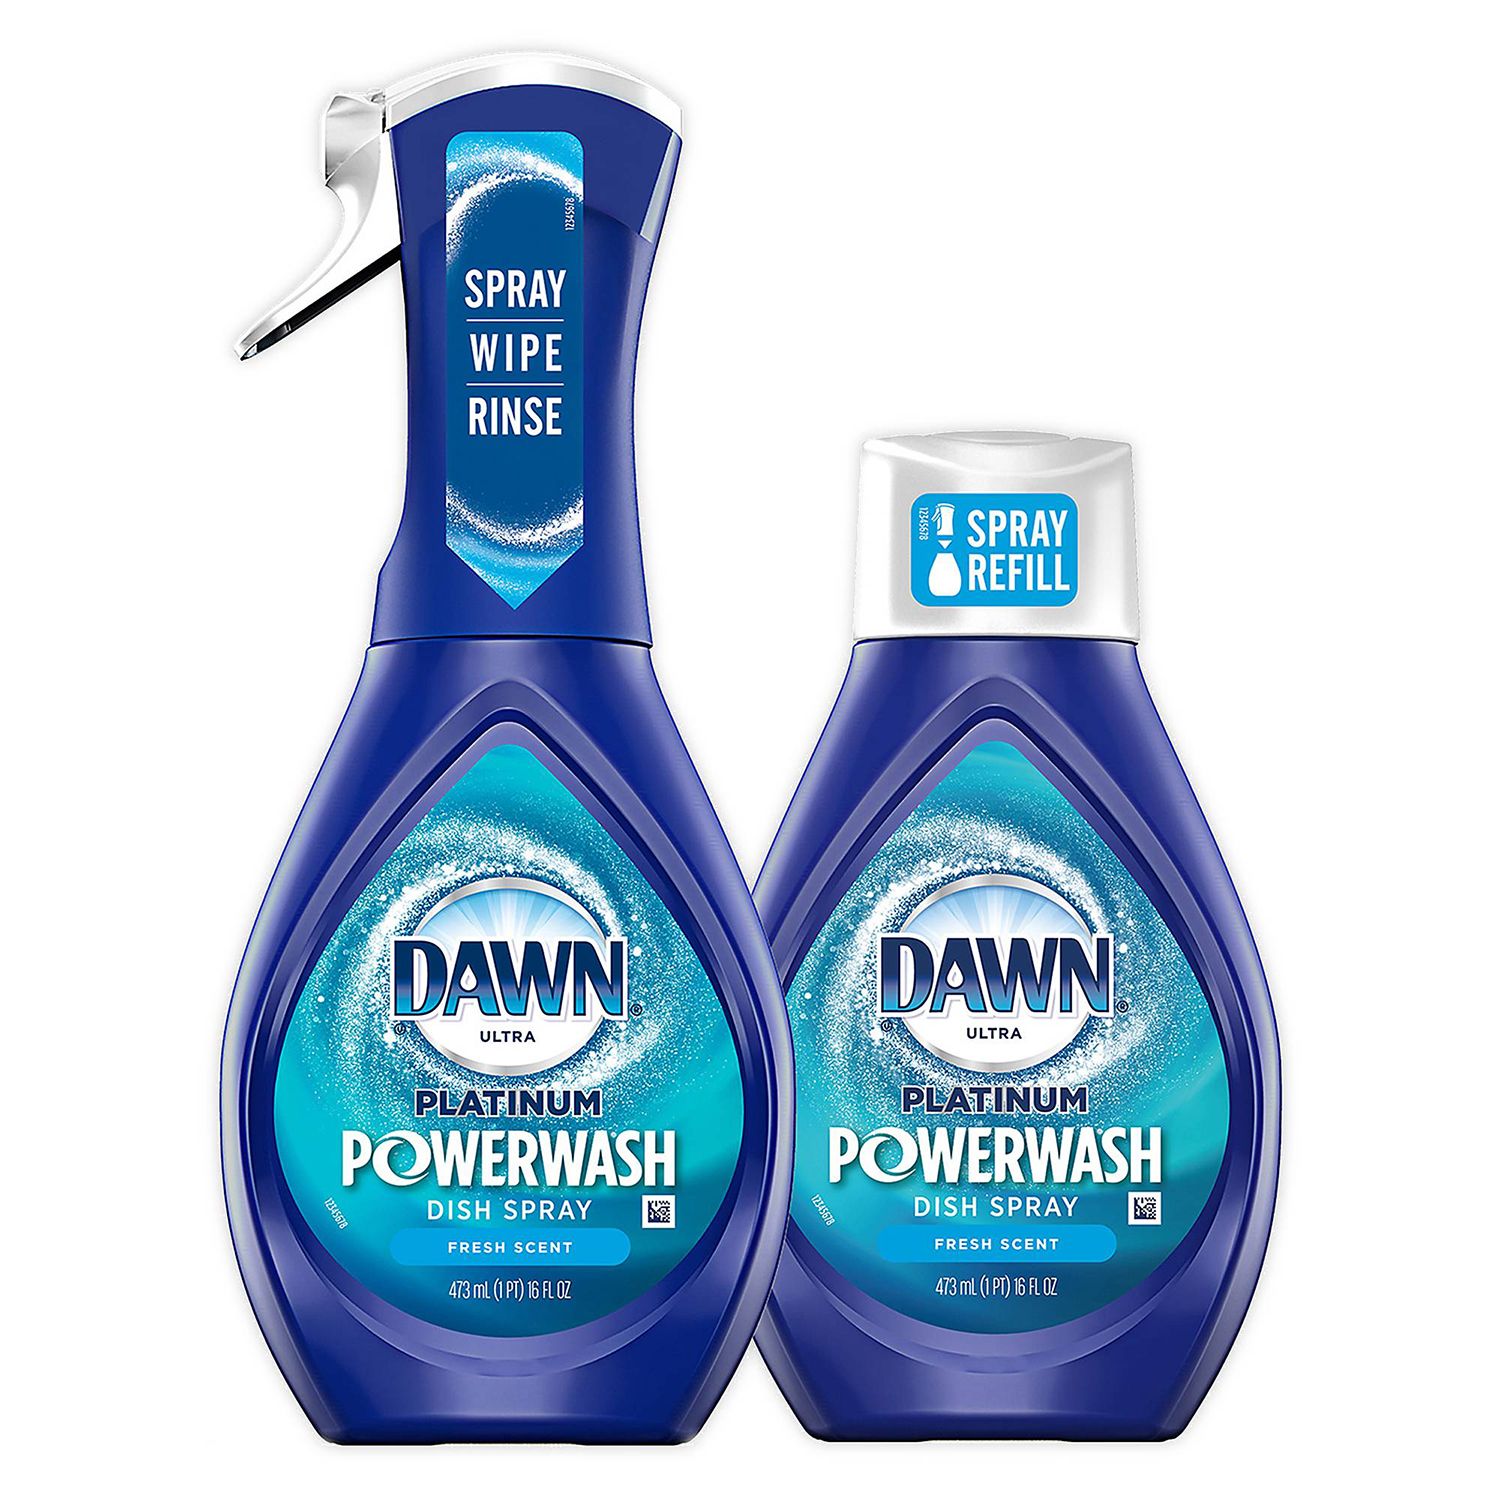 Dawn Ultra Platinum Powerwash Geschirrspray-Paket